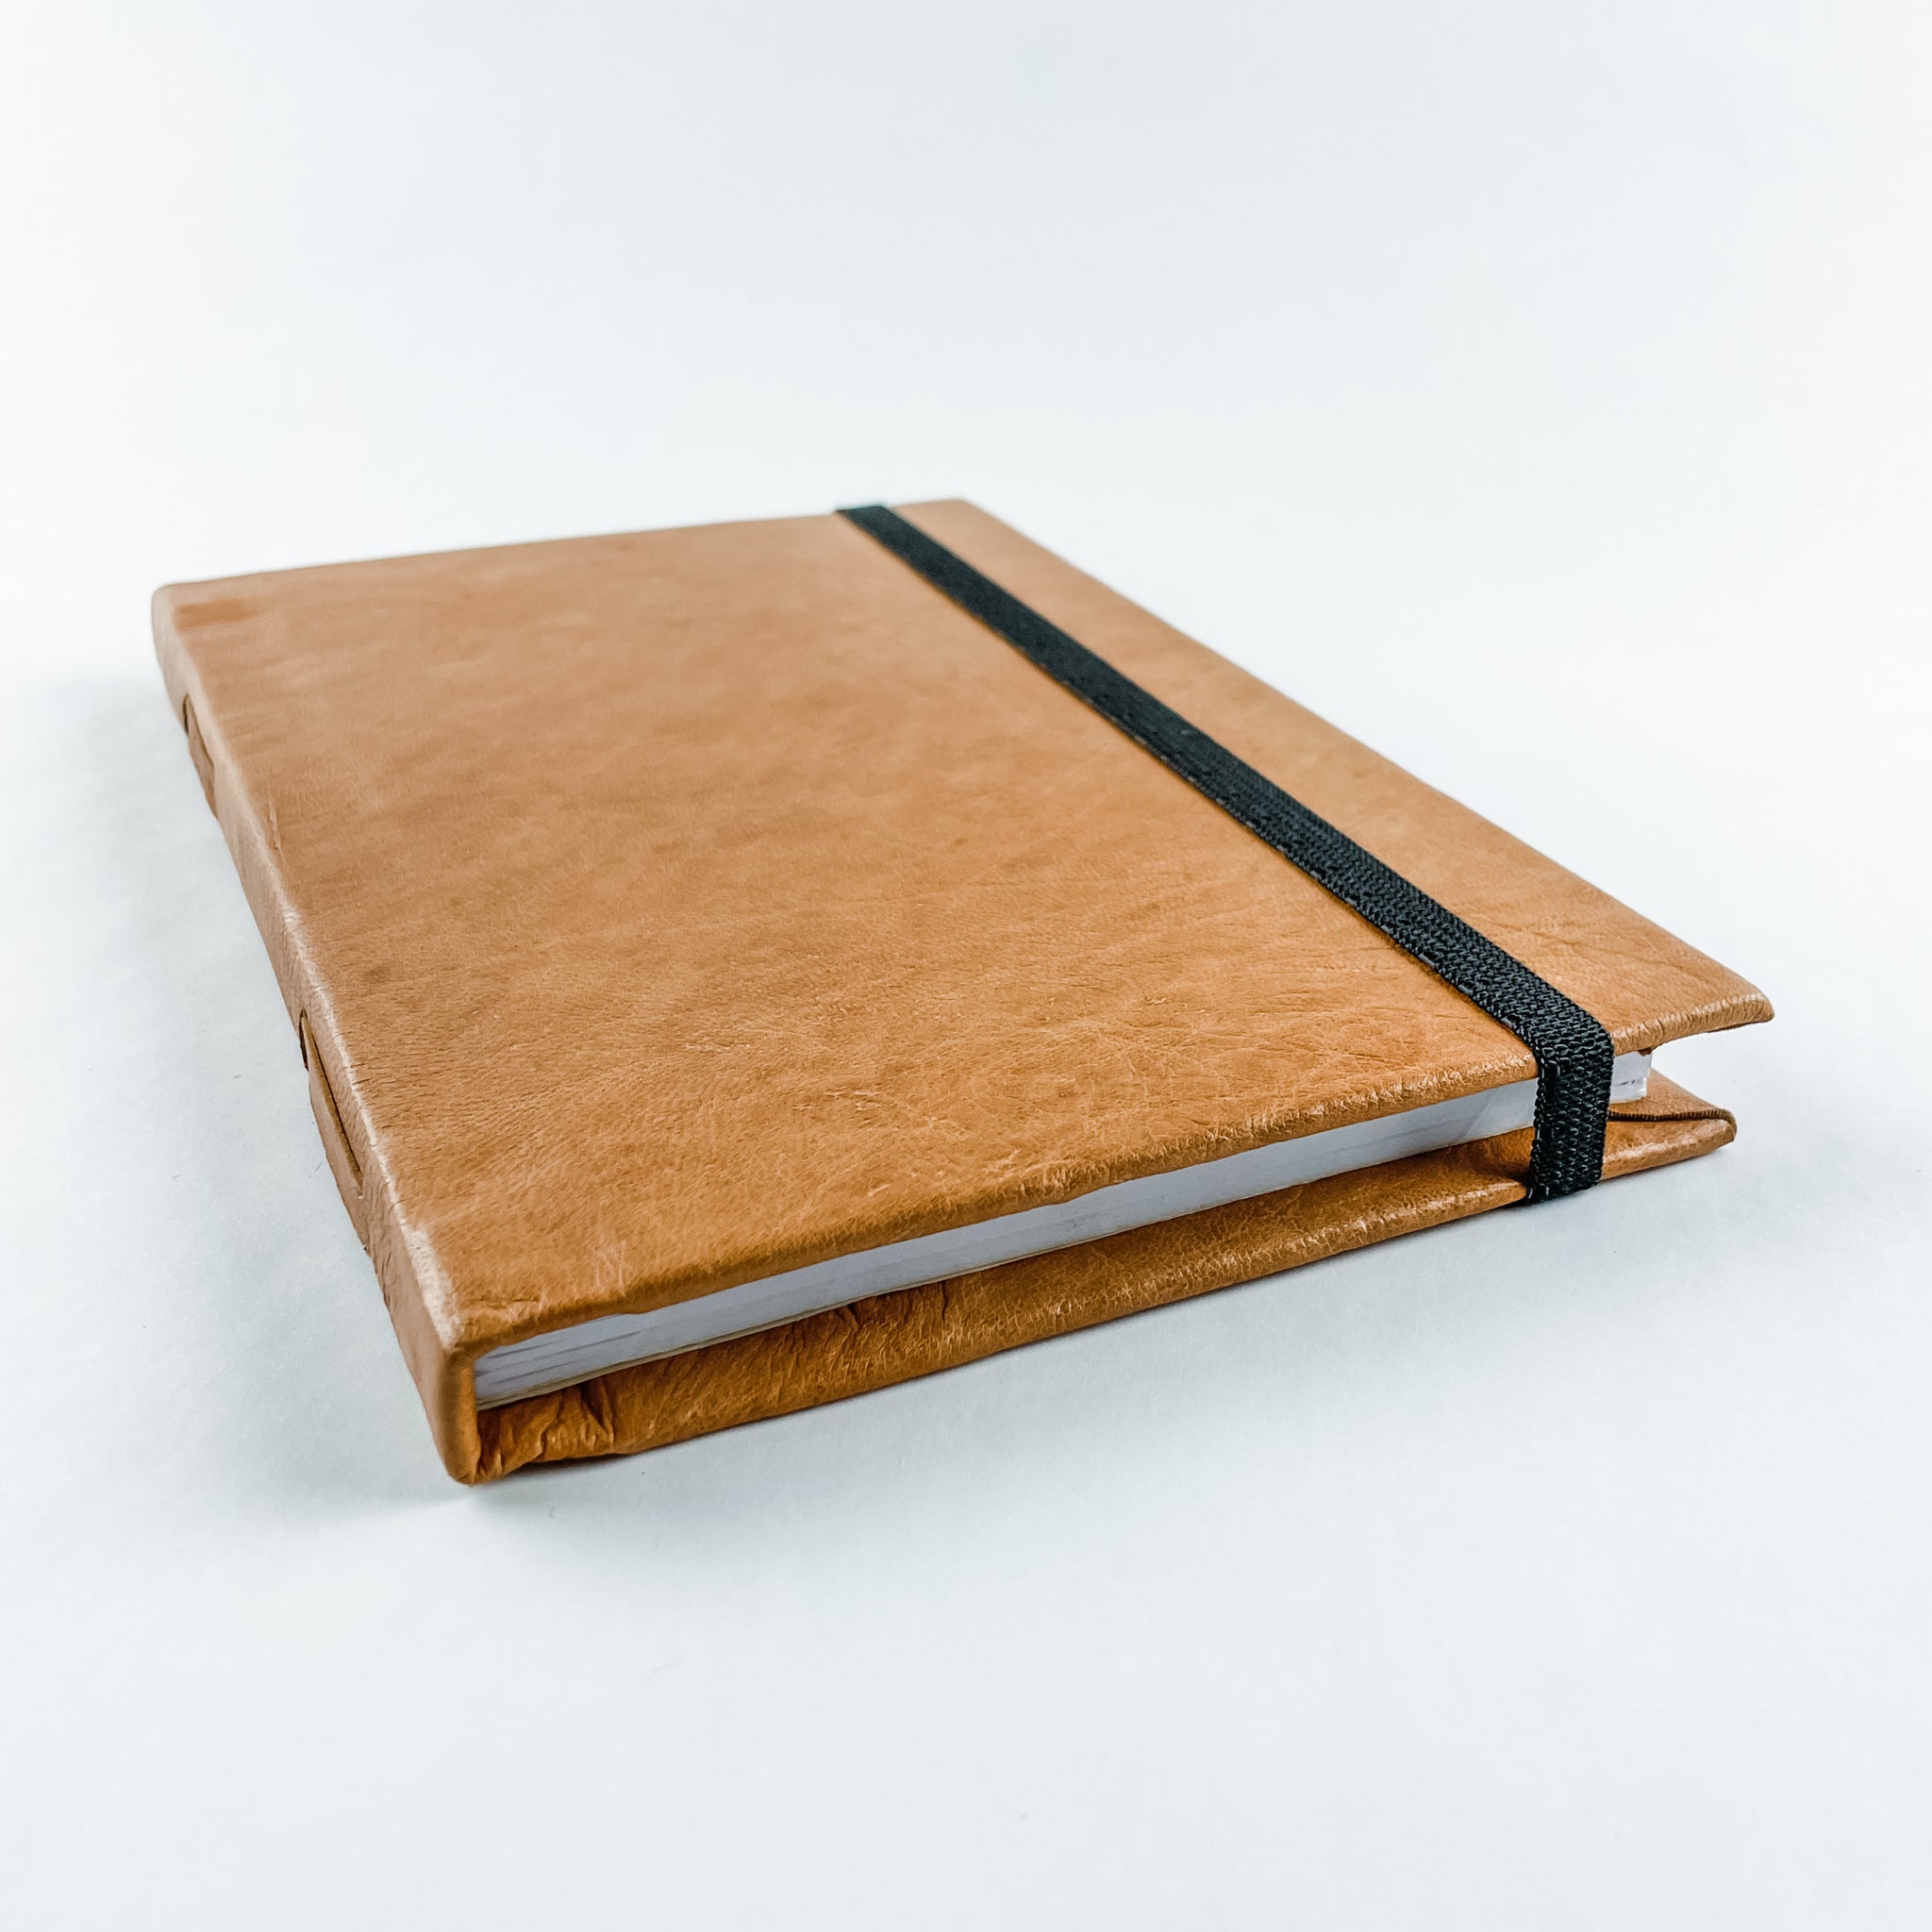 Leather Journal (6x9) - FMSCMarketplace.org